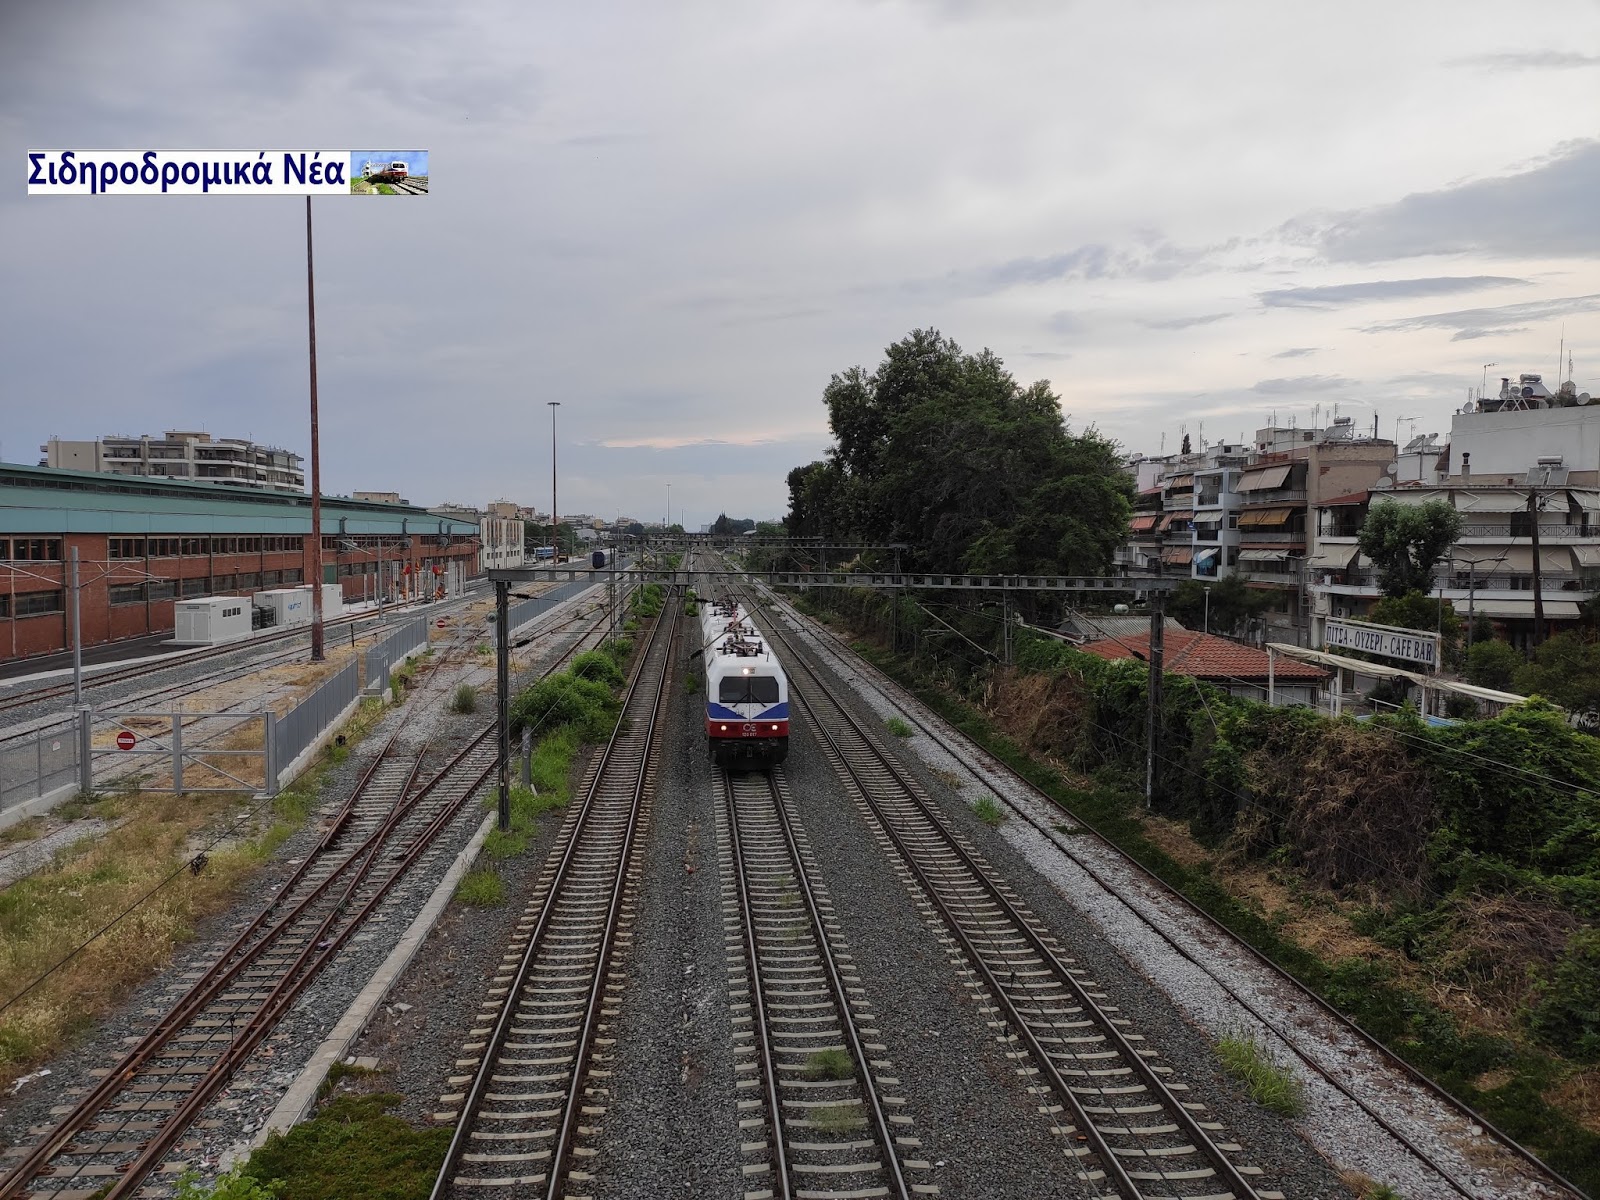 Σύντομα η δημοπράτηση του μεγάλου σιδηροδρομικού έργου  Αίγιο - Ρίο - Φωτογραφία 1